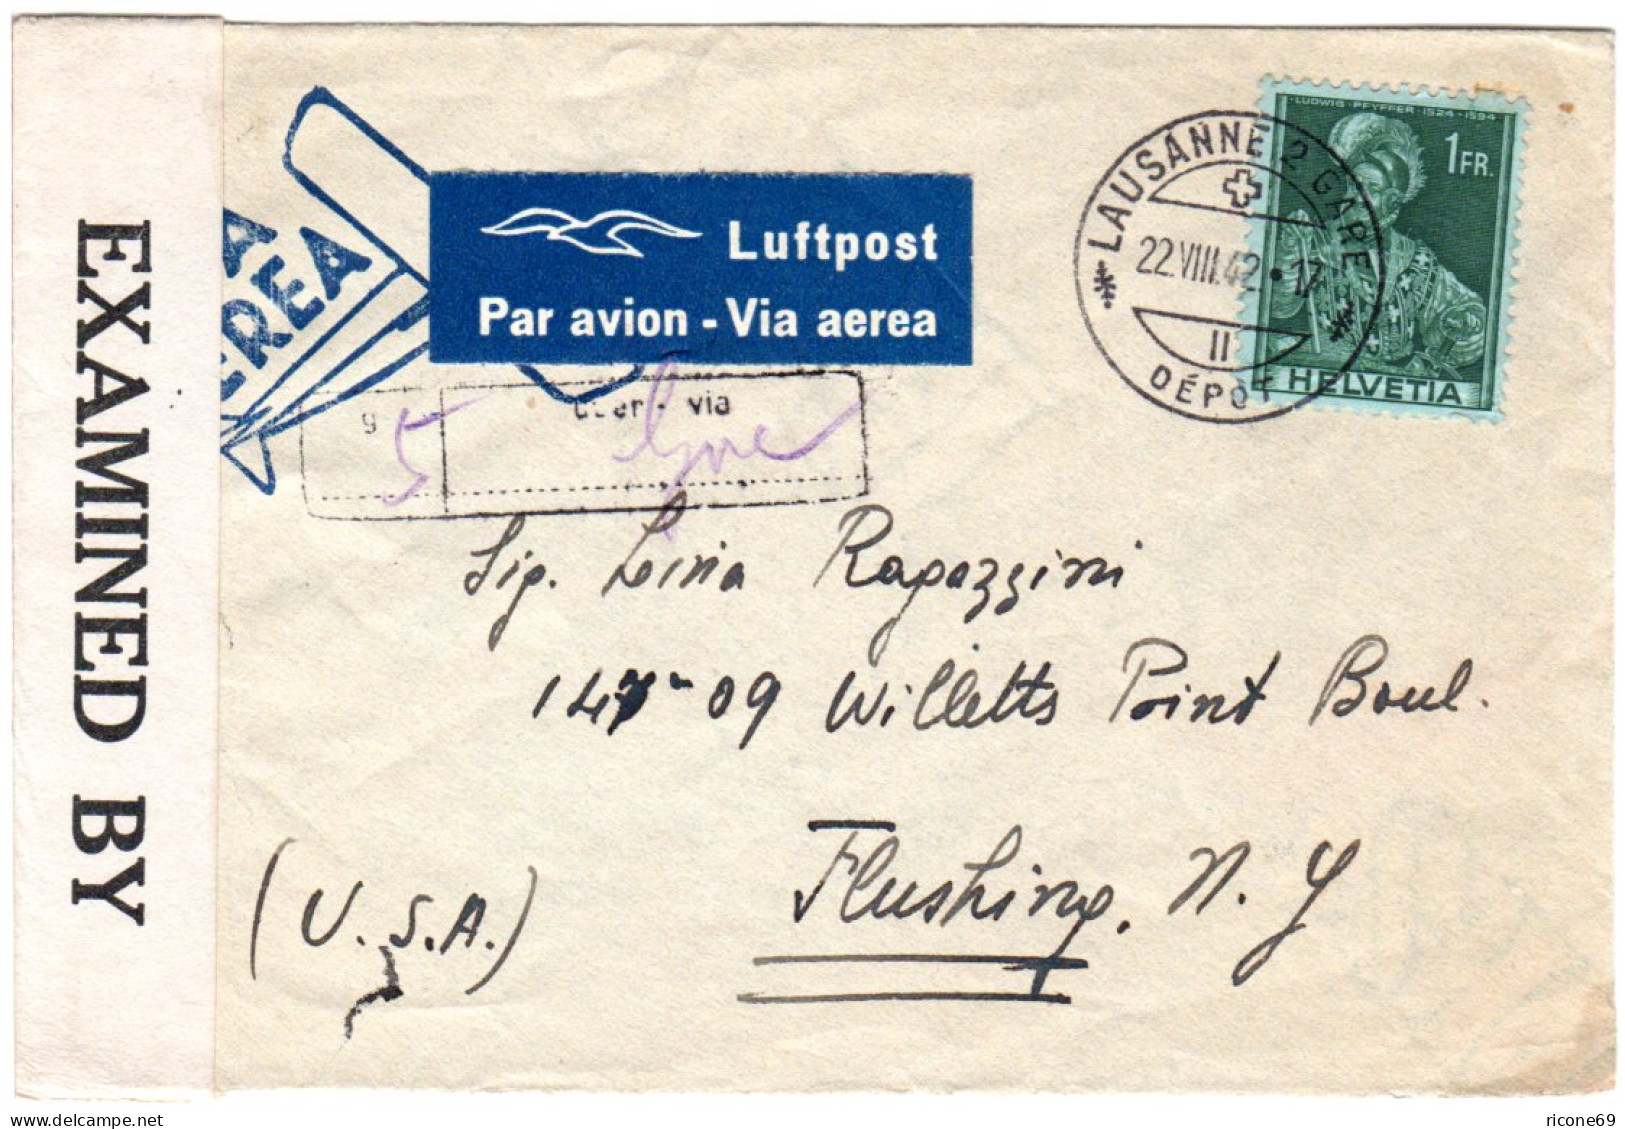 Schweiz 1942, EF 1 Fr. Auf Luftpost Zensur Brief V. Lausanne Via Genf N. USA - Lettres & Documents